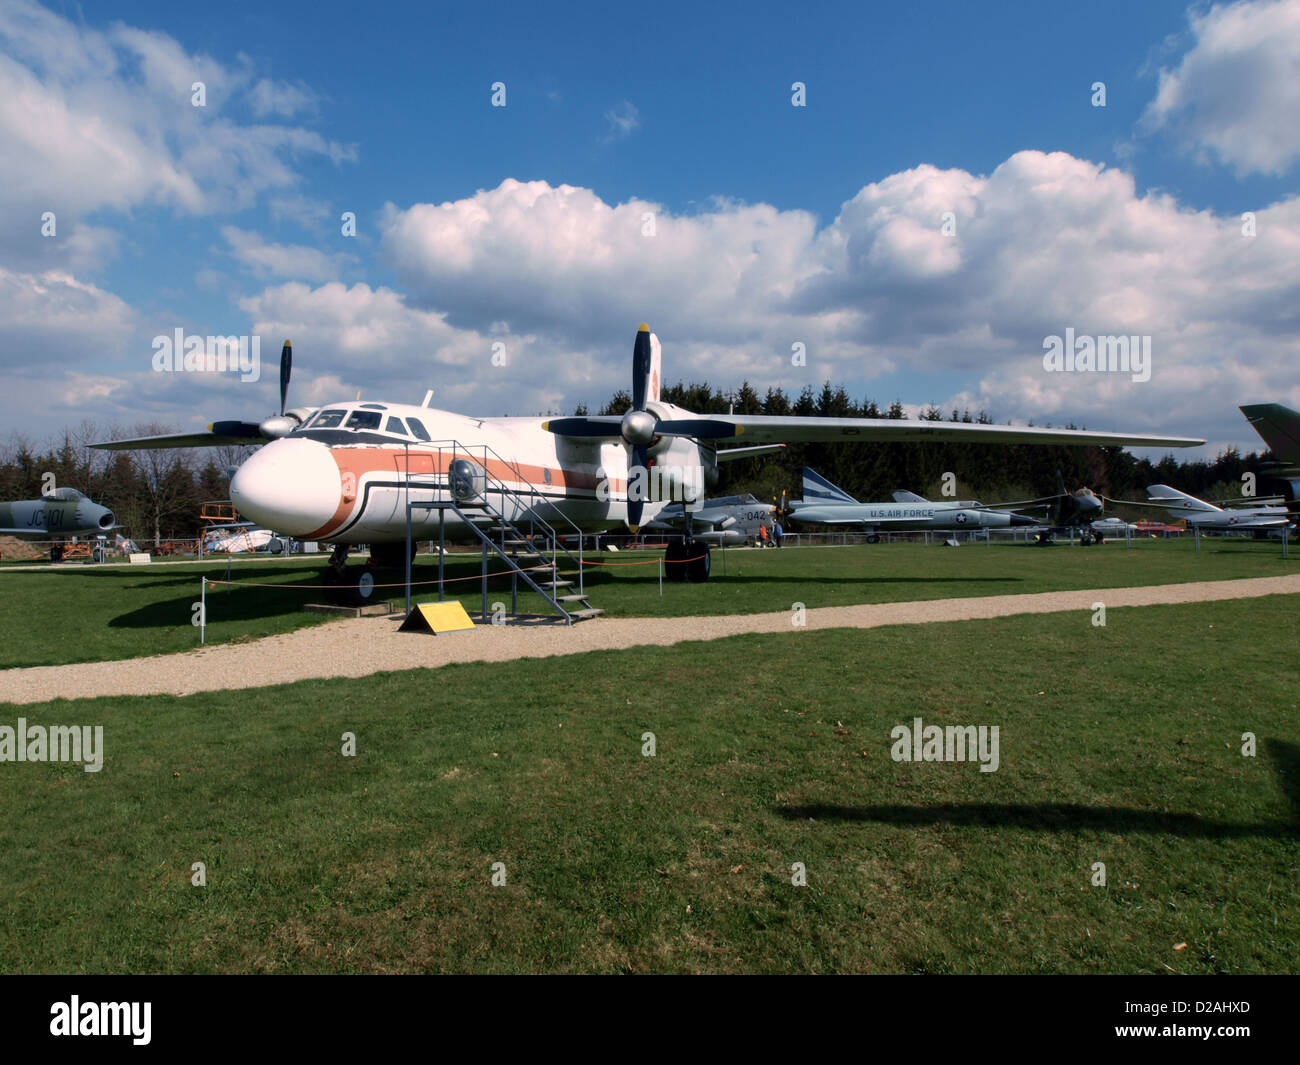 Antonov An-26 52+08 (cn 10706) Stock Photo